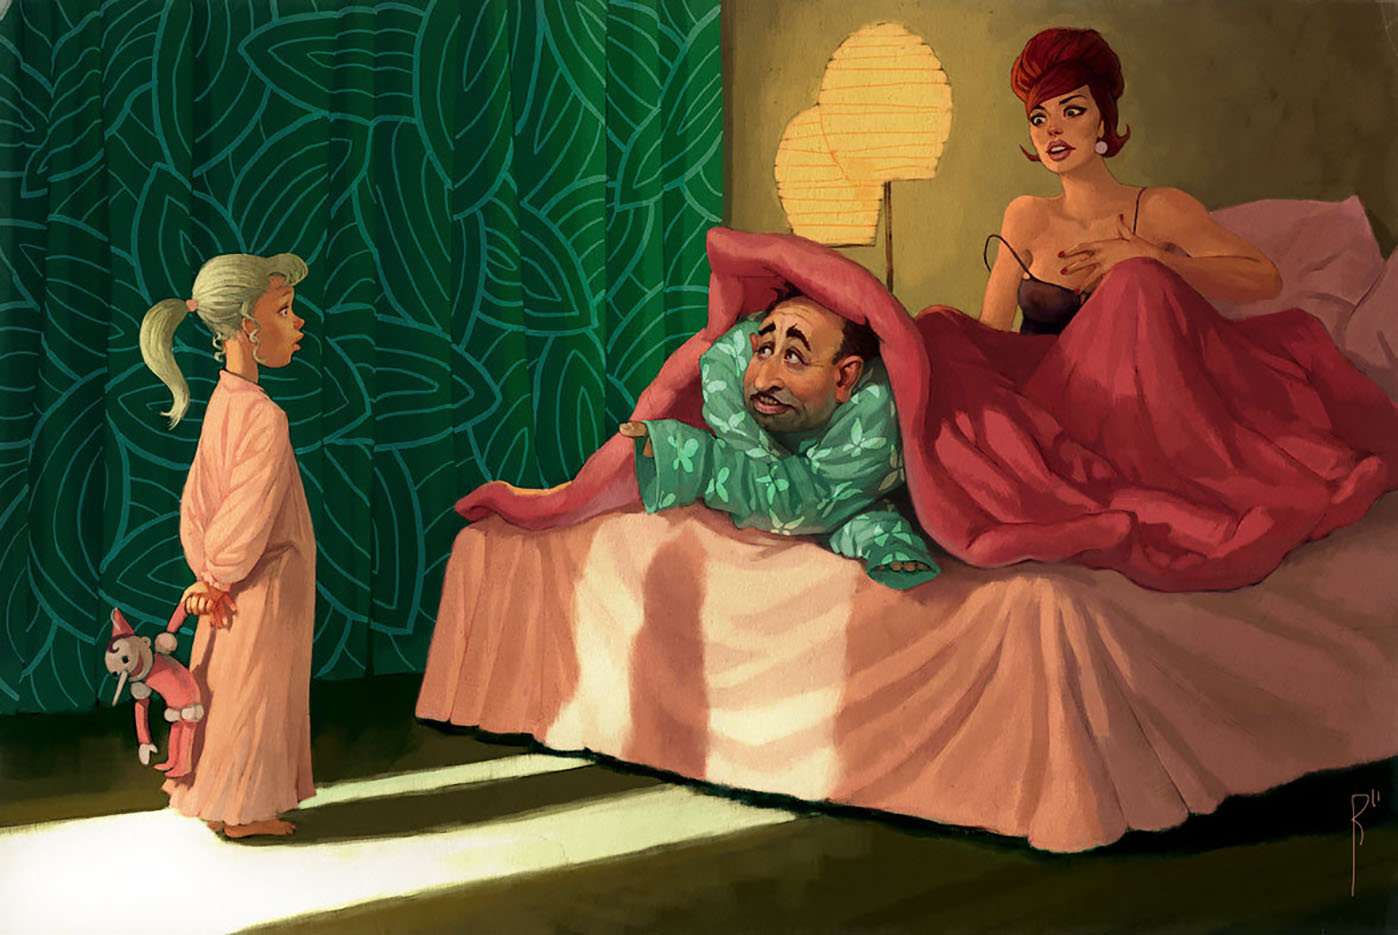 Вальдемар Казак (Waldemar Kazak) digital art, Bed Time